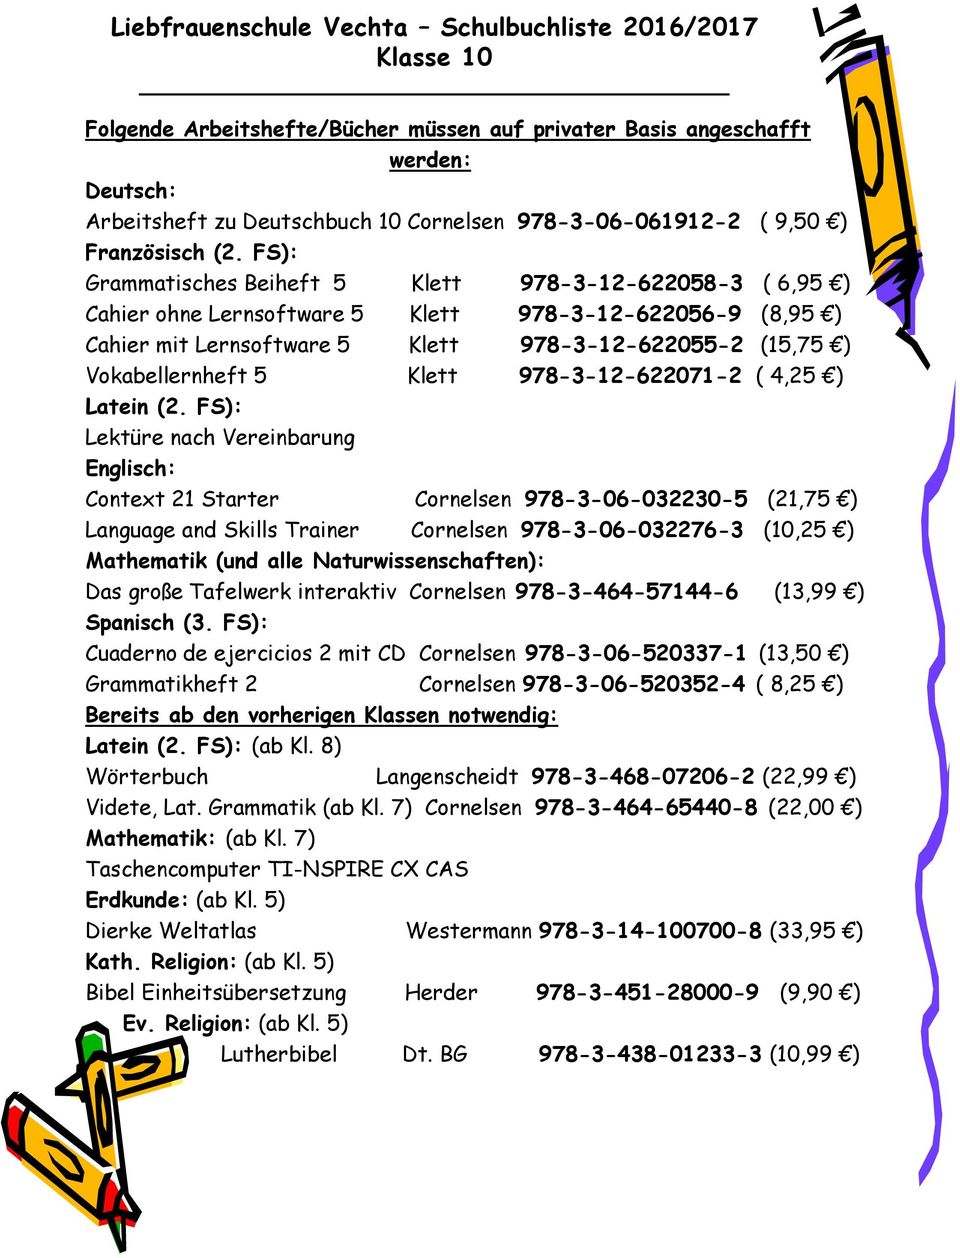 FS): Lektüre nach Vereinbarung Context 21 Starter Cornelsen 978-3-06-032230-5 (21,75 ) Language and Skills Trainer Cornelsen 978-3-06-032276-3 (10,25 ) Mathematik (und alle Naturwissenschaften): Das